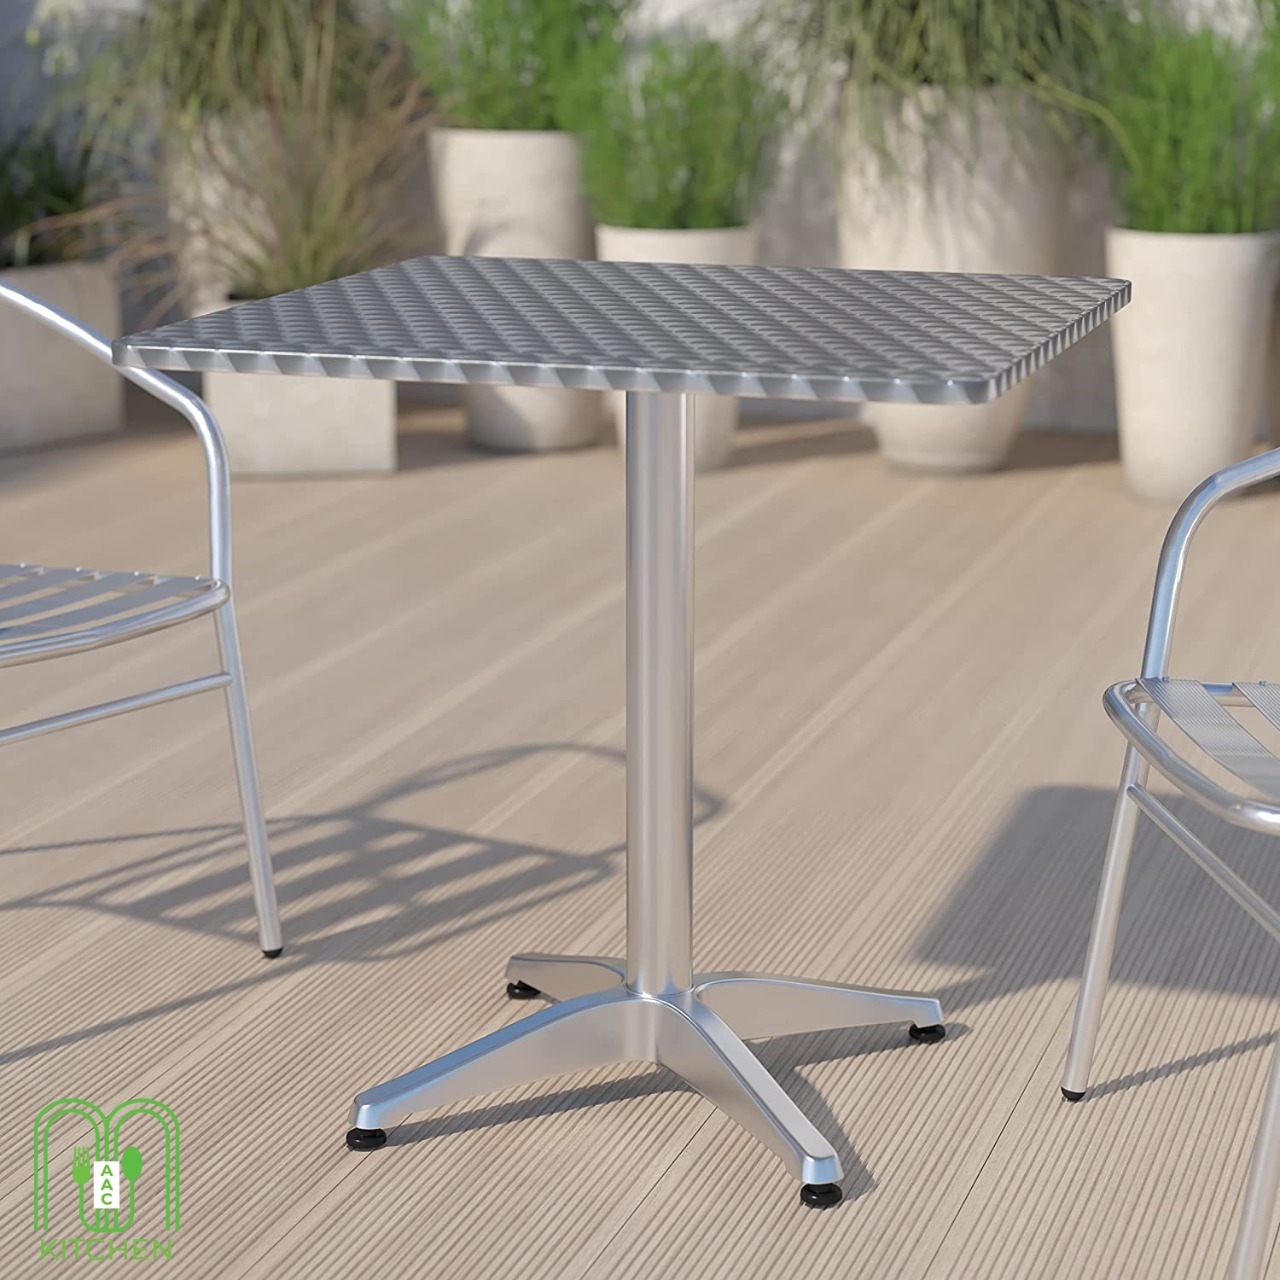 Indoor-Outdoor Table